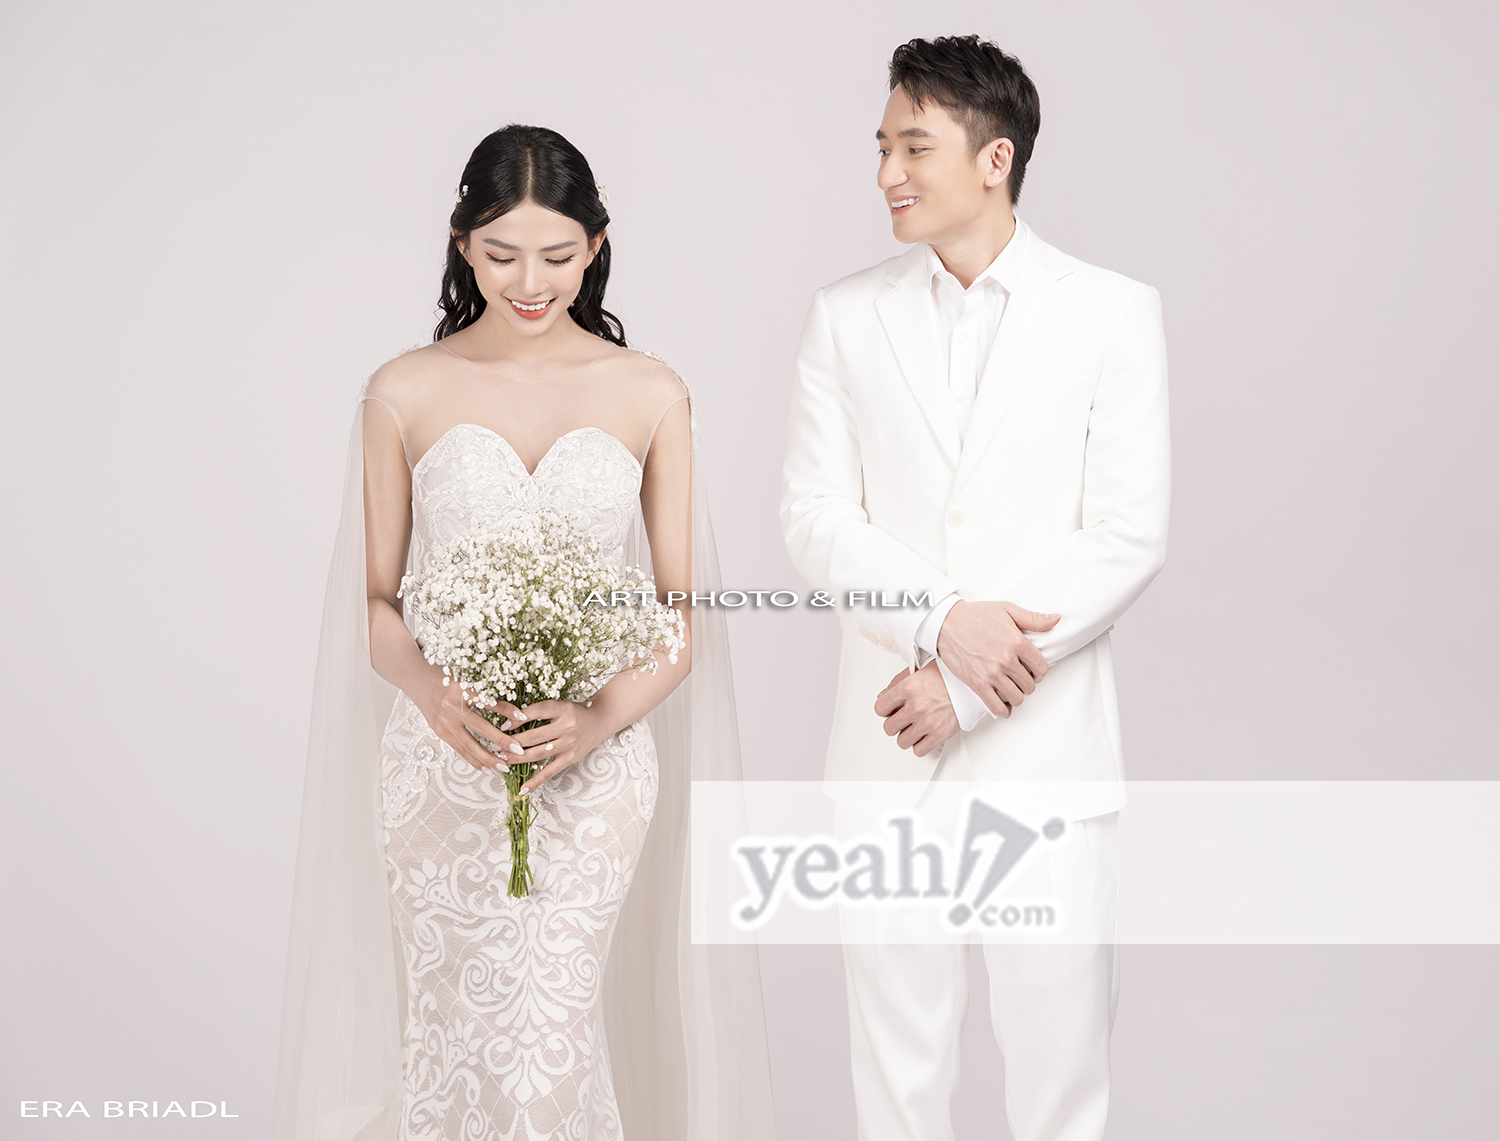 Trọn bộ ảnh cưới của Phan Mạnh Quỳnh và Khánh Vy - ảnh 11